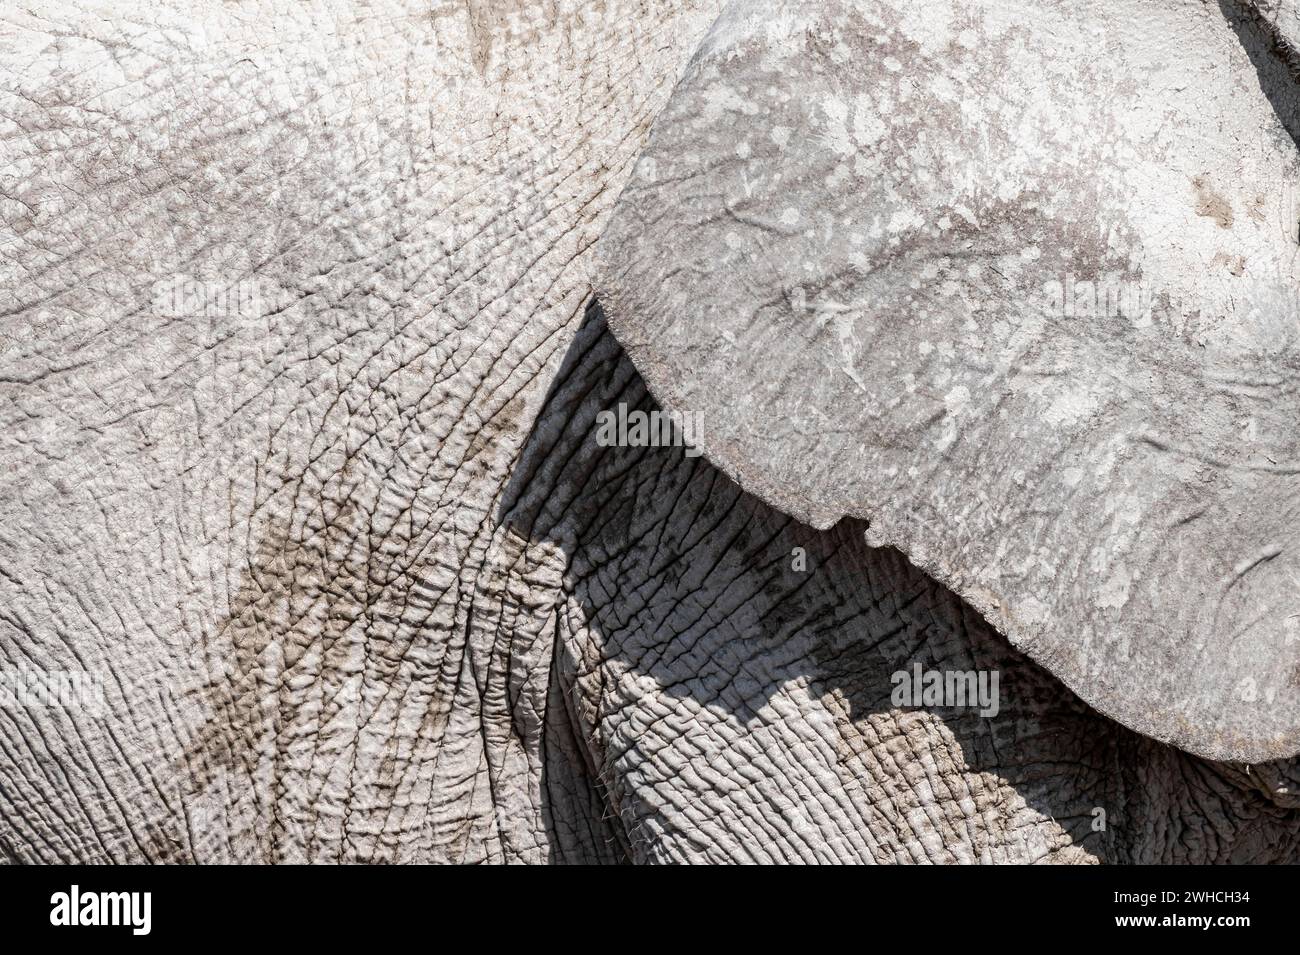 Elefante africano (Loxodonta africana), dettaglio, orecchio e pelle rugosa, Parco Nazionale di Etosha, Namibia Foto Stock